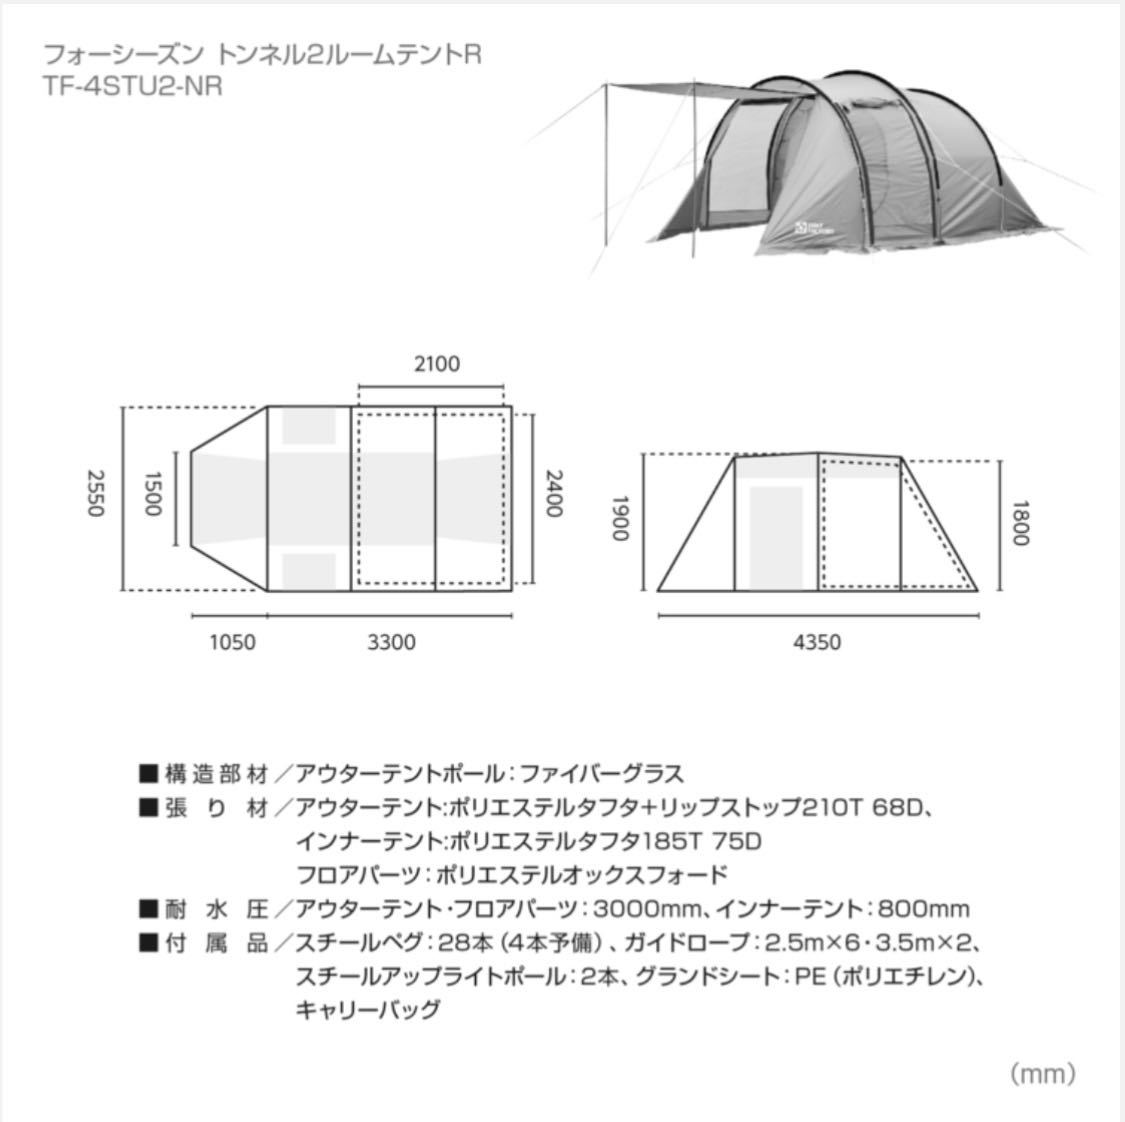 【新品送料込み】テントファクトリー ☆4シーズントンネル 2ルームテント